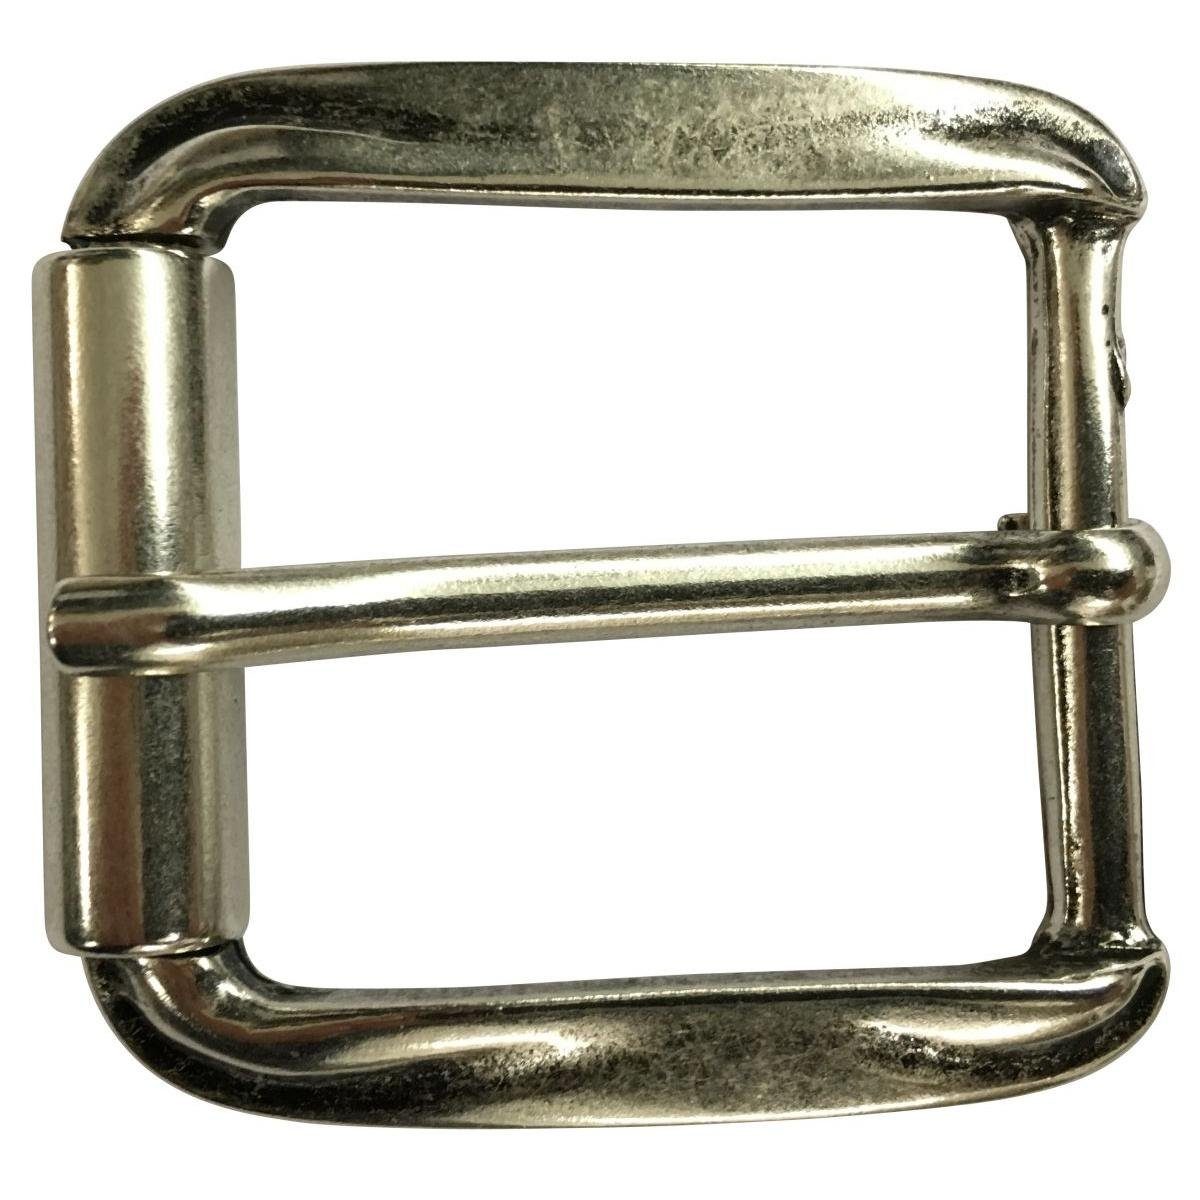 BELTINGER Gürtelschnalle mit Rolle 4,0 cm - Gürtelschließe 40mm - Dorn-Schließe - Gürtel bis 4c